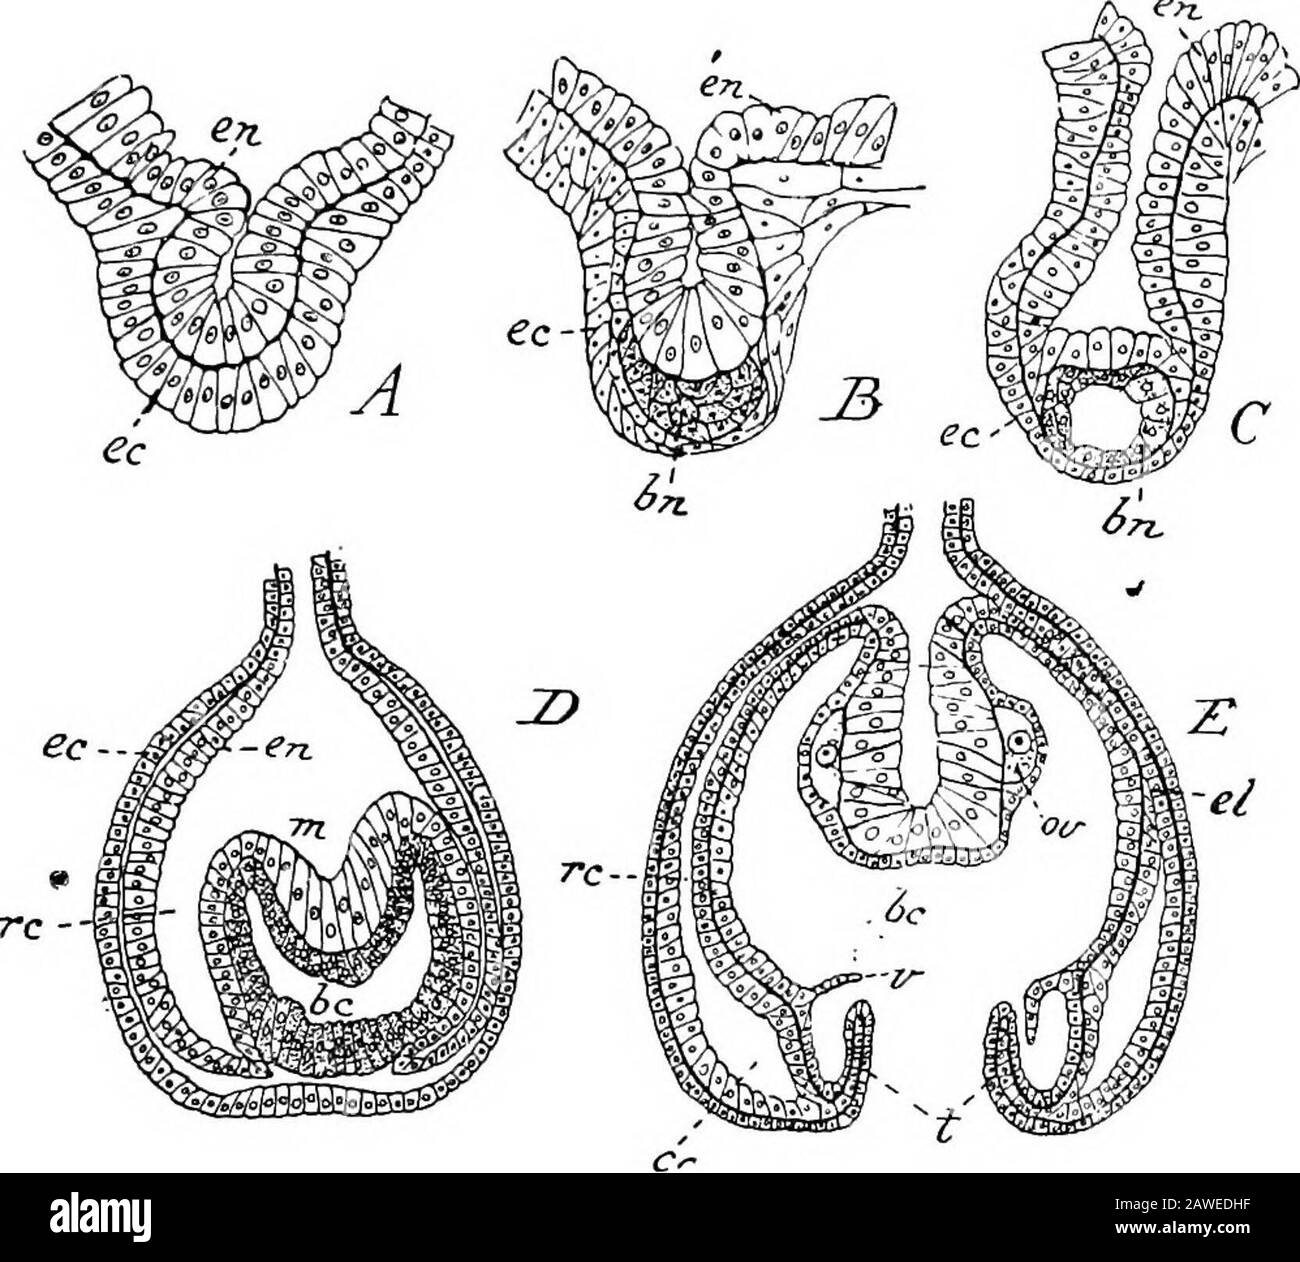 Eine Einführung in die Untersuchung der vergleichenden Anatomie der Tiere . Ry tentacle hasan Ocellus an seiner Basis, aber nur acht - nämlich die Adradiale - haben neben Ocelli Otocysten. Das Vorhandensein von Otocystson der Rand des Regenschirms ist charakteristisch für die Gruppe der Hydromedusse, die als Leptomedusce bekannt ist. In den dicht-alliedantomedusa sind Ocelli immer vorhanden, Otocysten nie. Abb. 51, C, ist eine schematische Darstellung eines medianlongitudinalen Abschnitts durch die medusa von Obelia. Es wird bestainkt, dass der Großteil des Regenschirms aus dem großen, verdickten Gelee oder Mesogloea besteht. Die ex-umbre Stockfoto